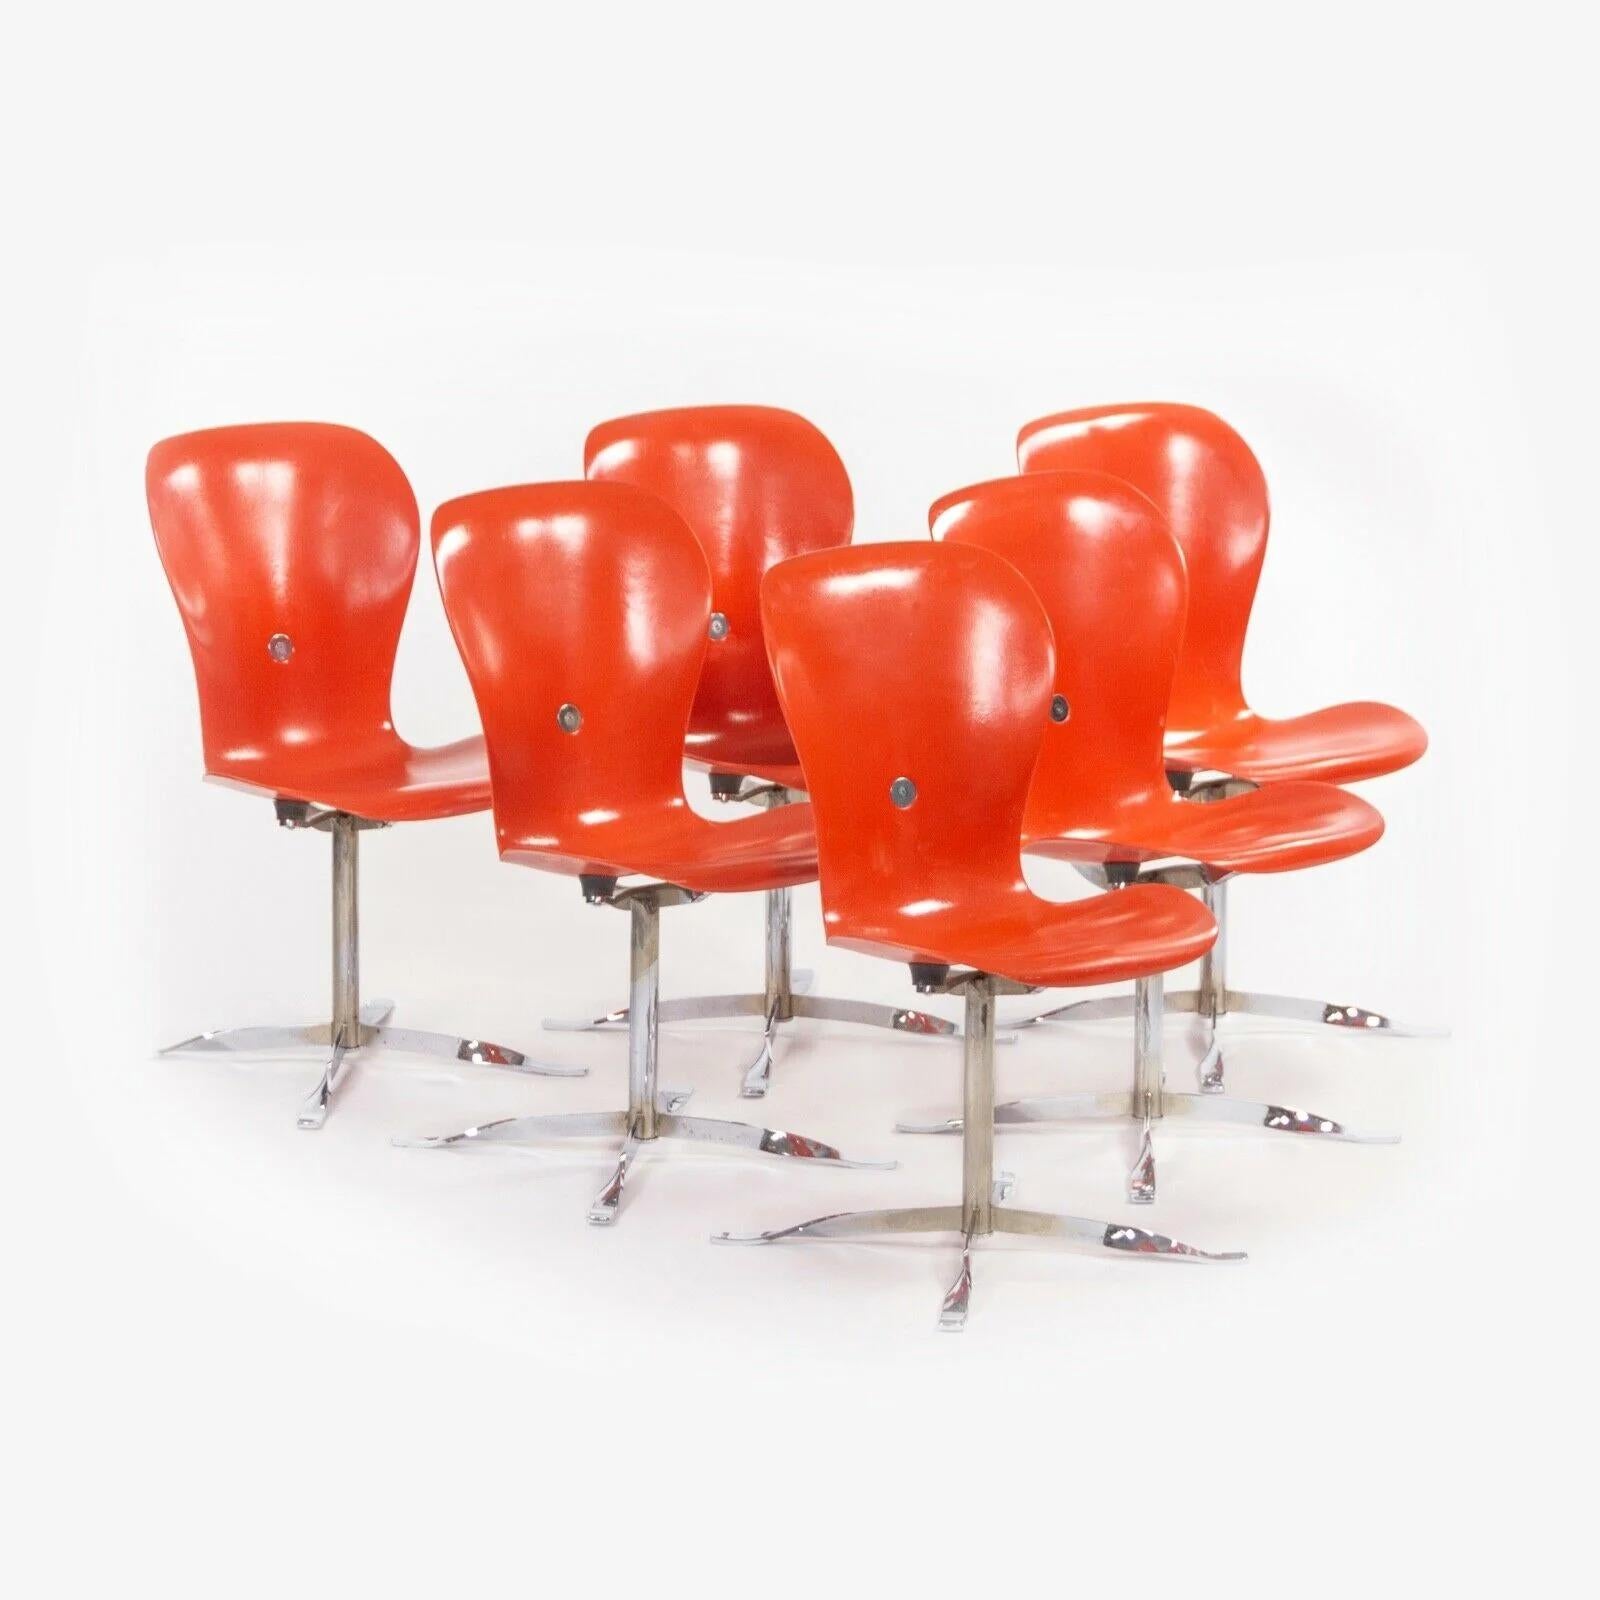 Nous proposons à la vente un magnifique ensemble de chaises de salle à manger Ion, conçues par Gideon Kramer et produites par American Desk Corporation. Ces pièces originales et emblématiques ont d'abord été conçues pour le restaurant tournant situé